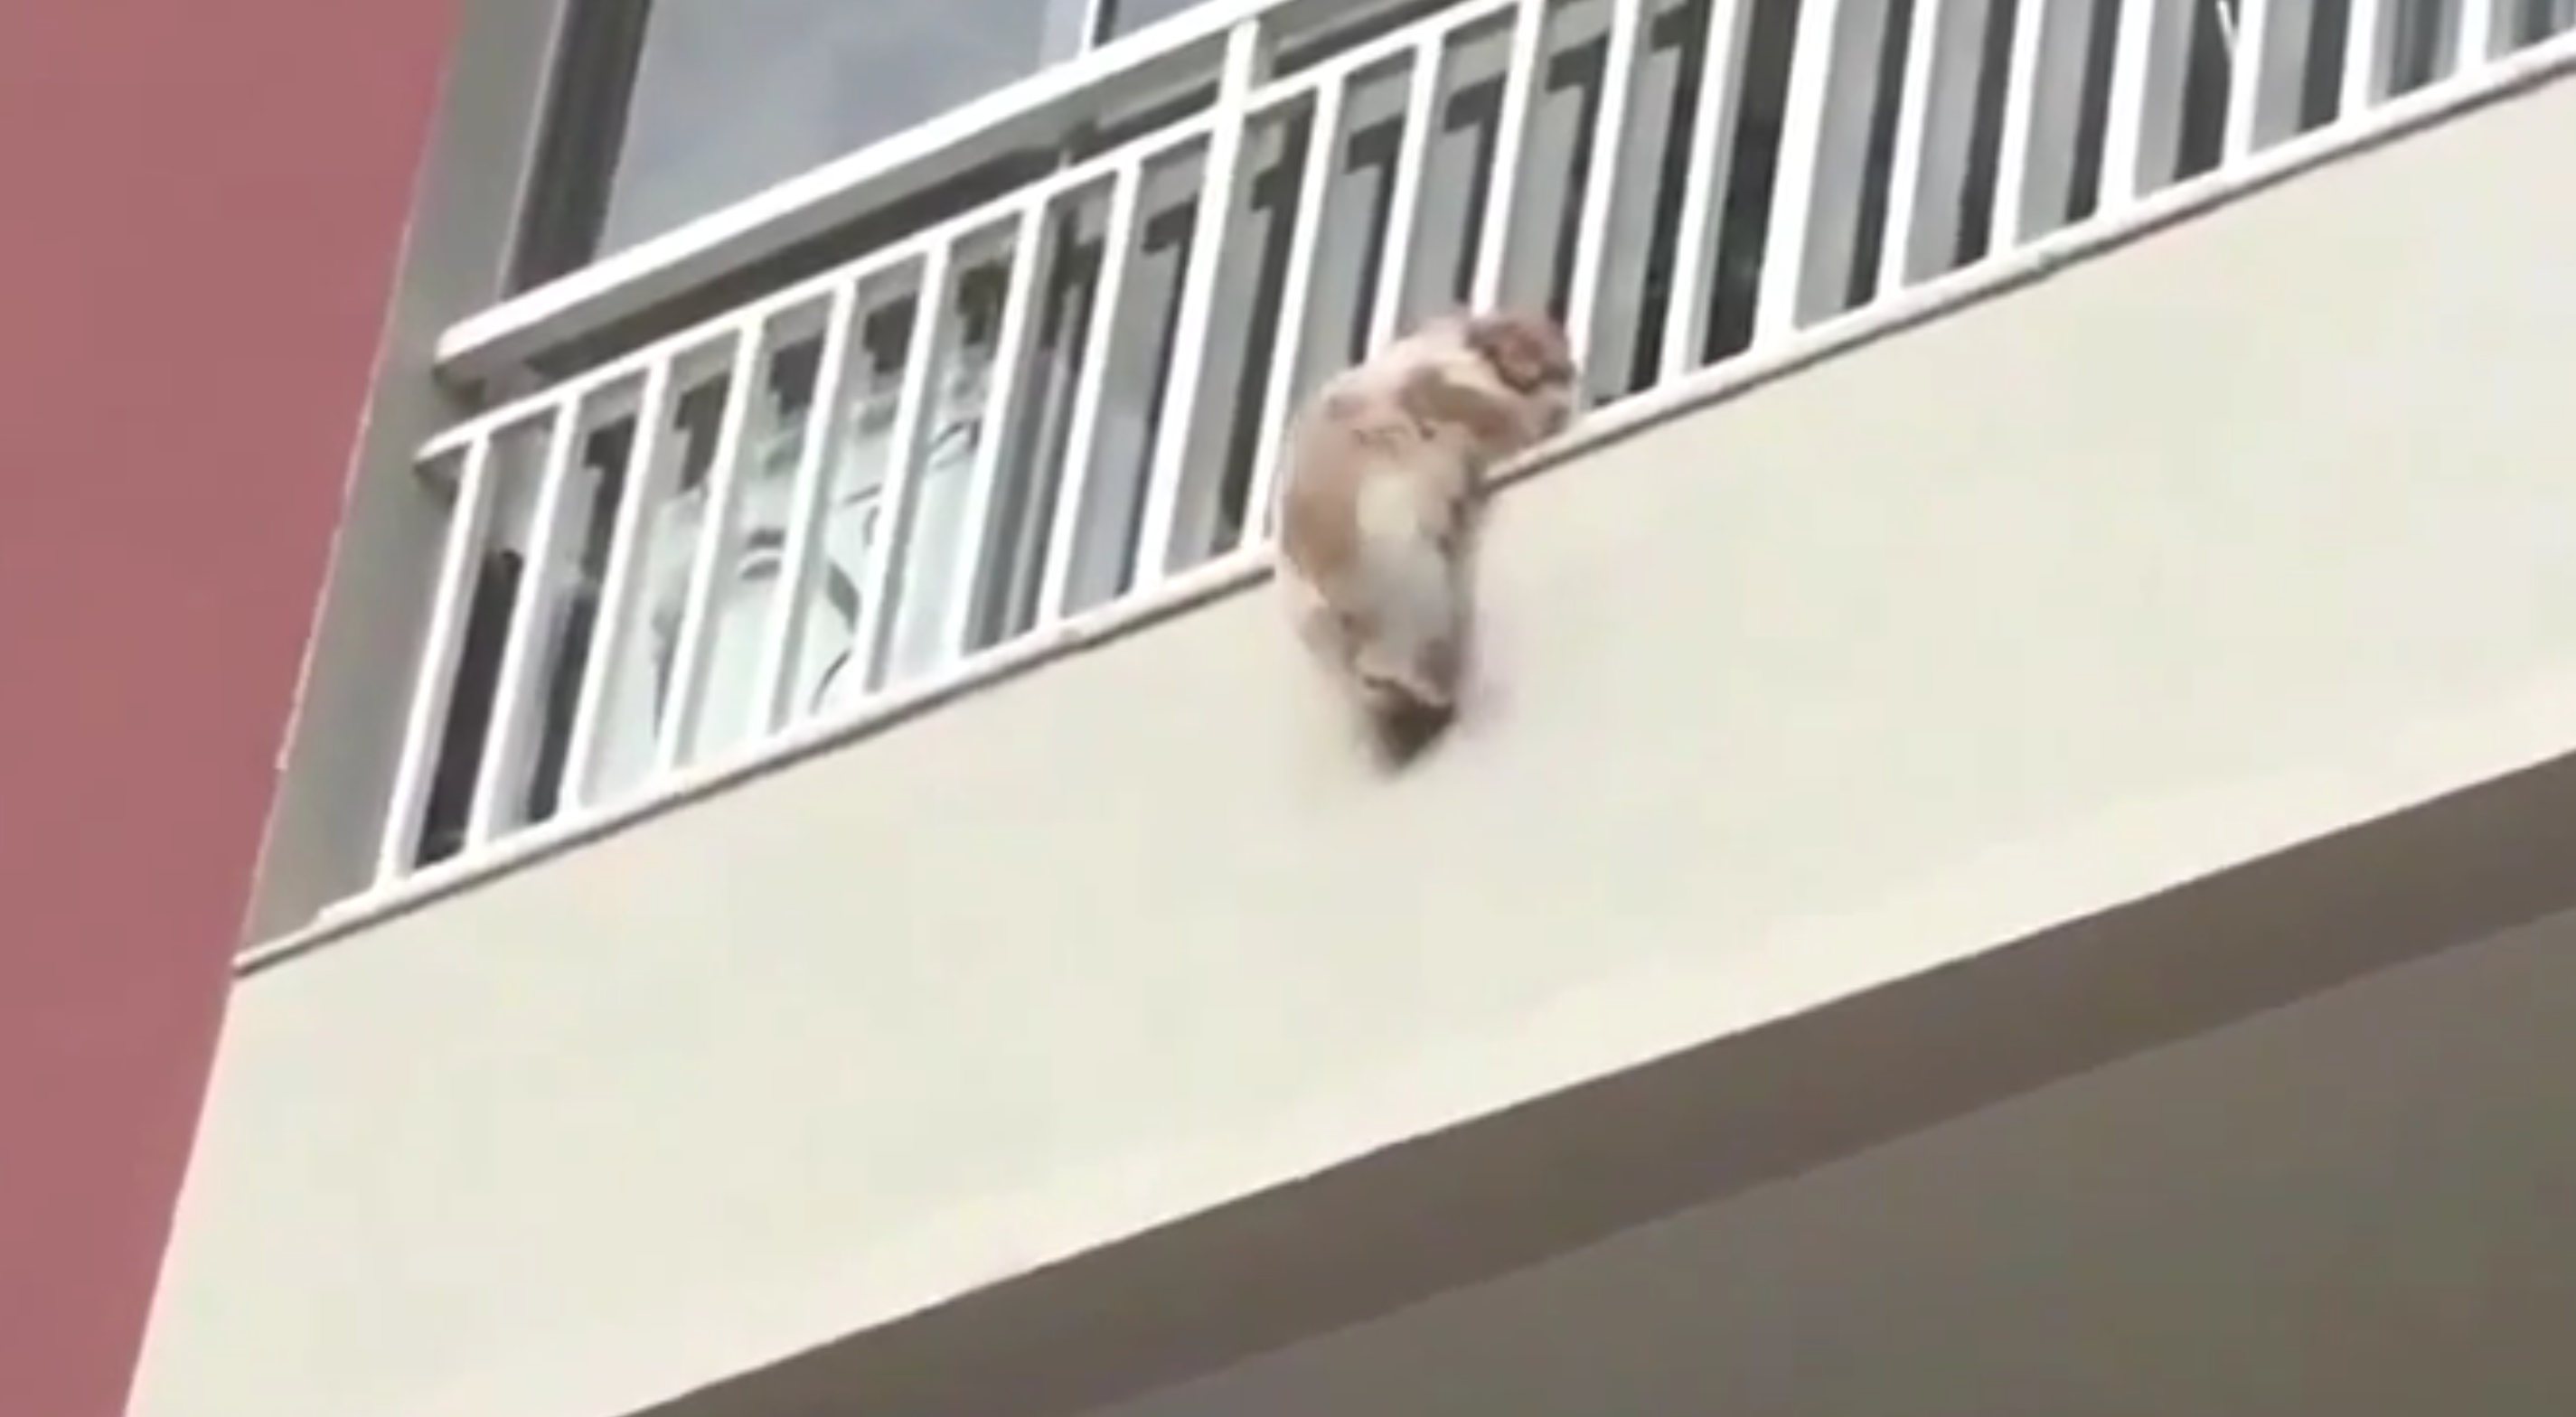 Spaventato dai botti, cane si getta dal balcone: il salvataggio è incredibile [VIDEO]